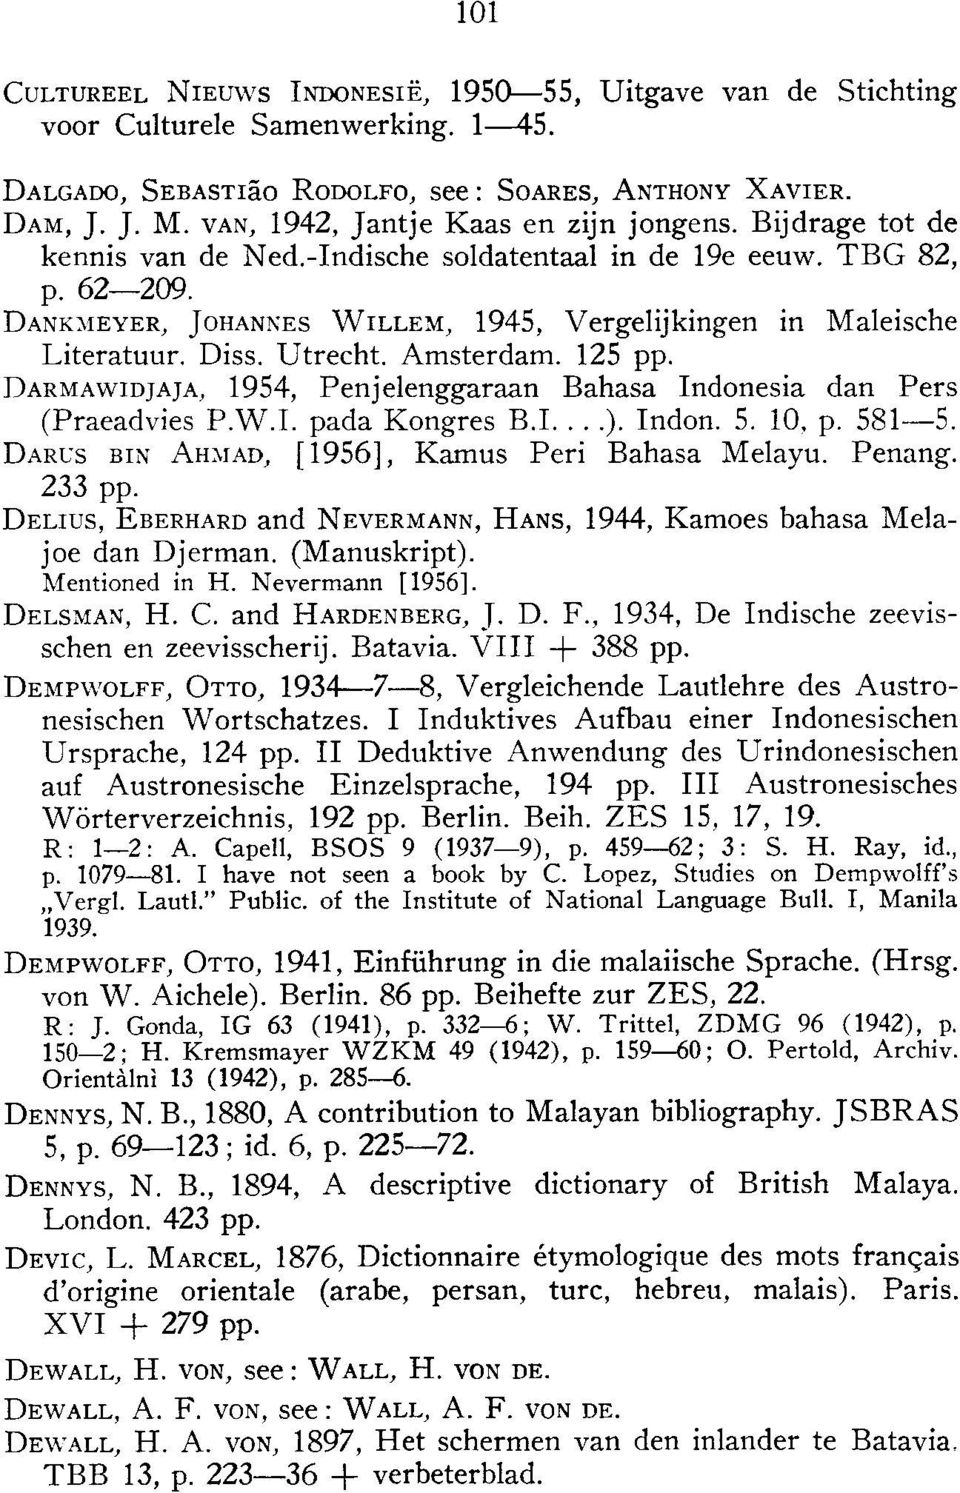 DANKMEYER, JOHANNES WILLEM, 1945, Vergelijkingen in Maleische Literatuur. Diss. Utrecht. Amsterdam. 125 pp. DARMA\VIDJAJA, 1954, Penjelenggaraan Bahasa Indonesia dan Pers (Praeadvies P.W.I. pada Kongres B.